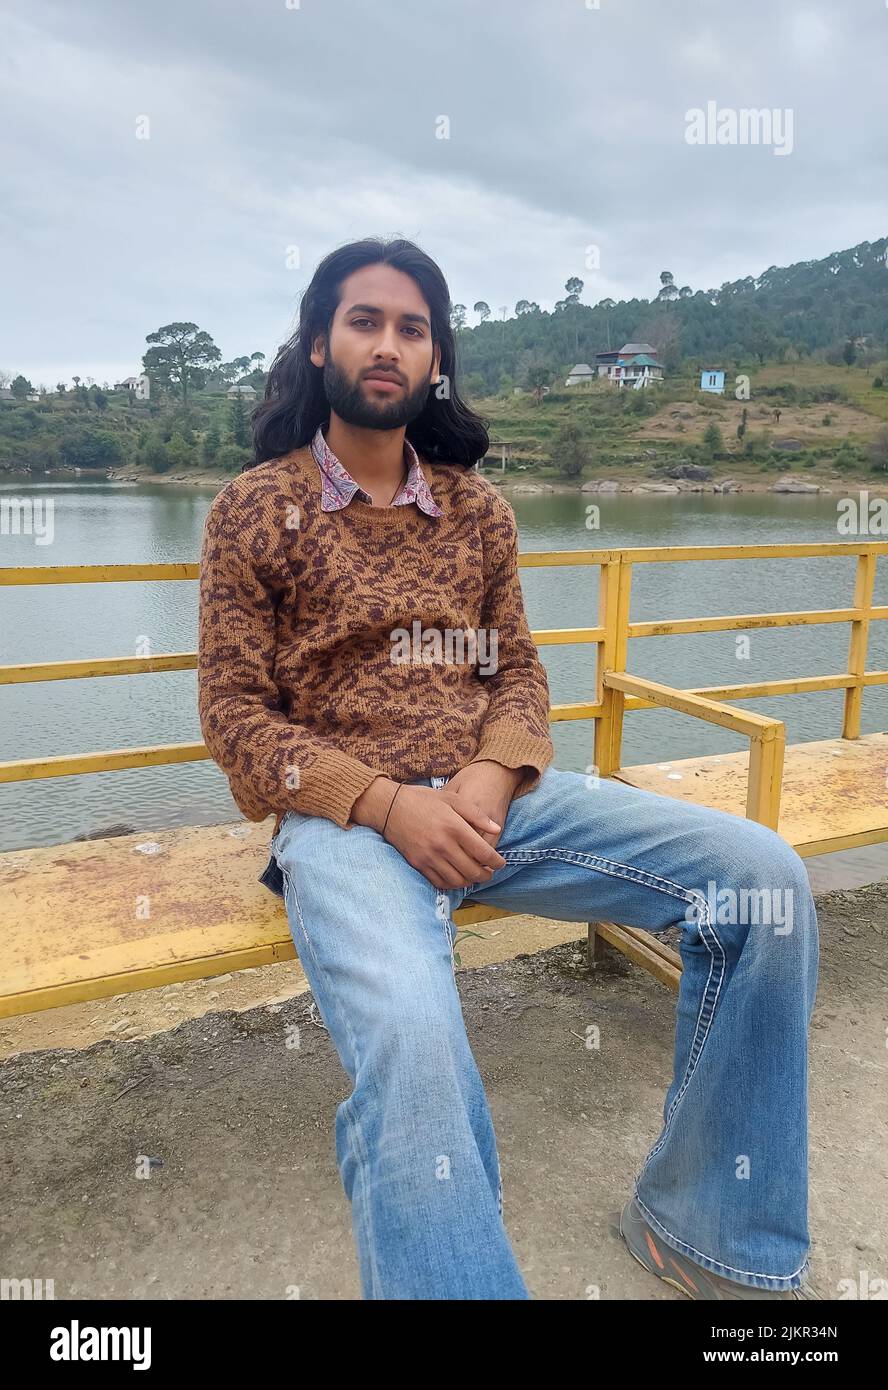 Un giovane indiano dall'aspetto buono con capelli lunghi e barba che guarda la macchina fotografica mentre si siede sulla panca accanto al lago Foto Stock